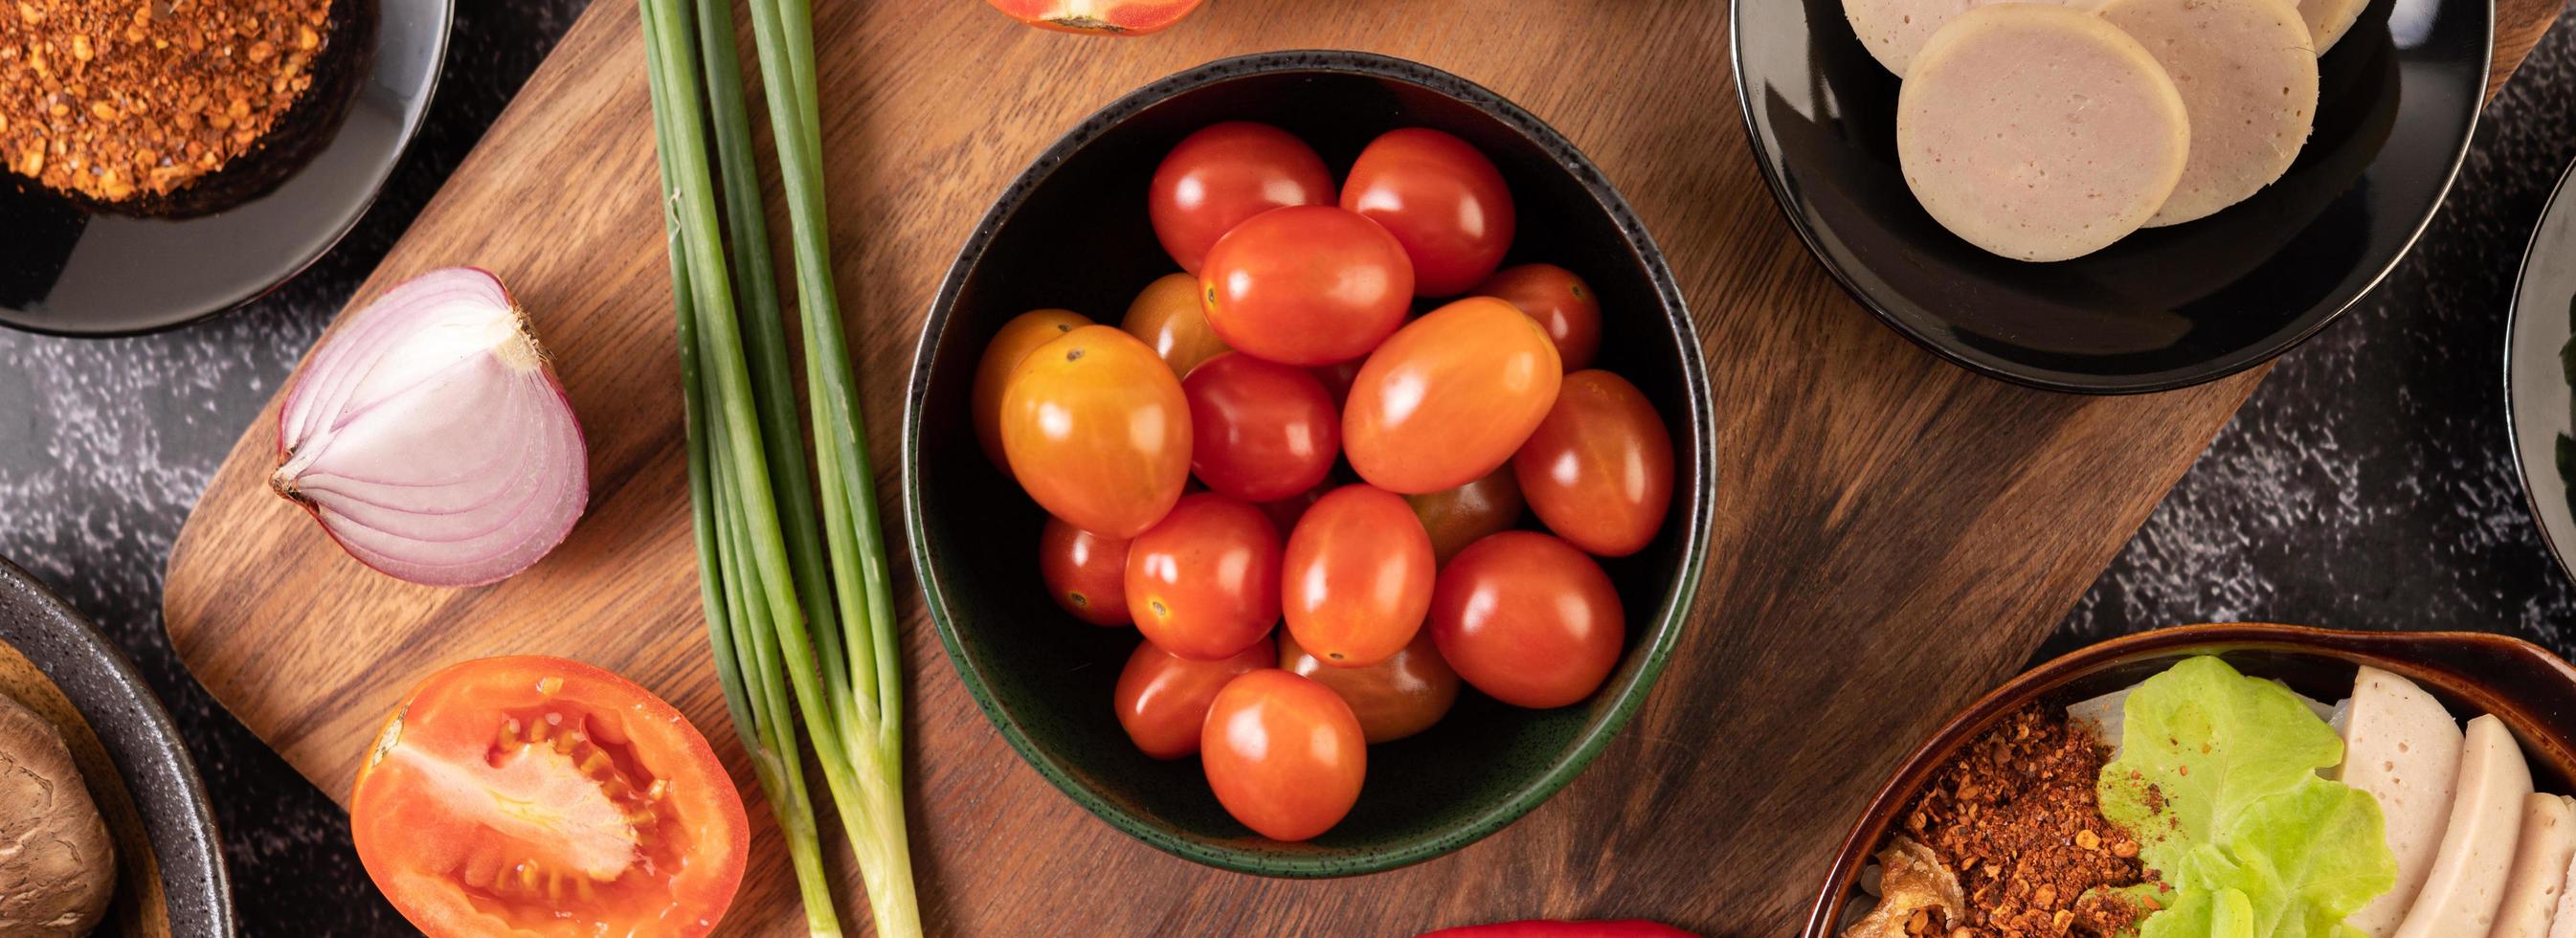 tomates cherry rojos con cebolletas, pimientos, tomates y cebollas rojas foto